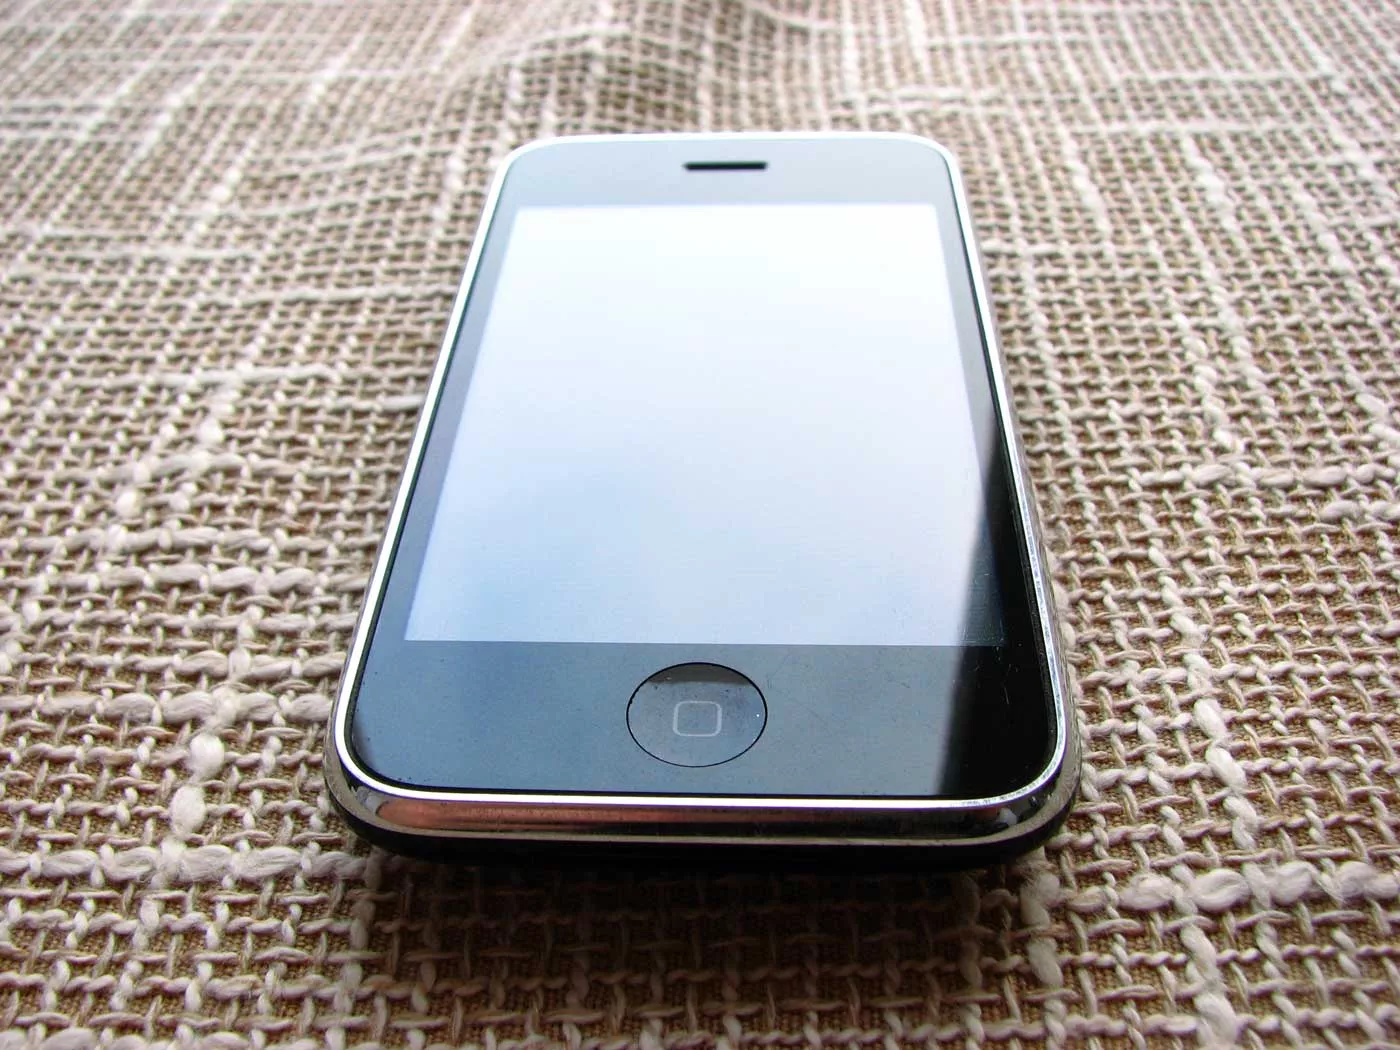 купить Apple iPhone 3g 8Gb